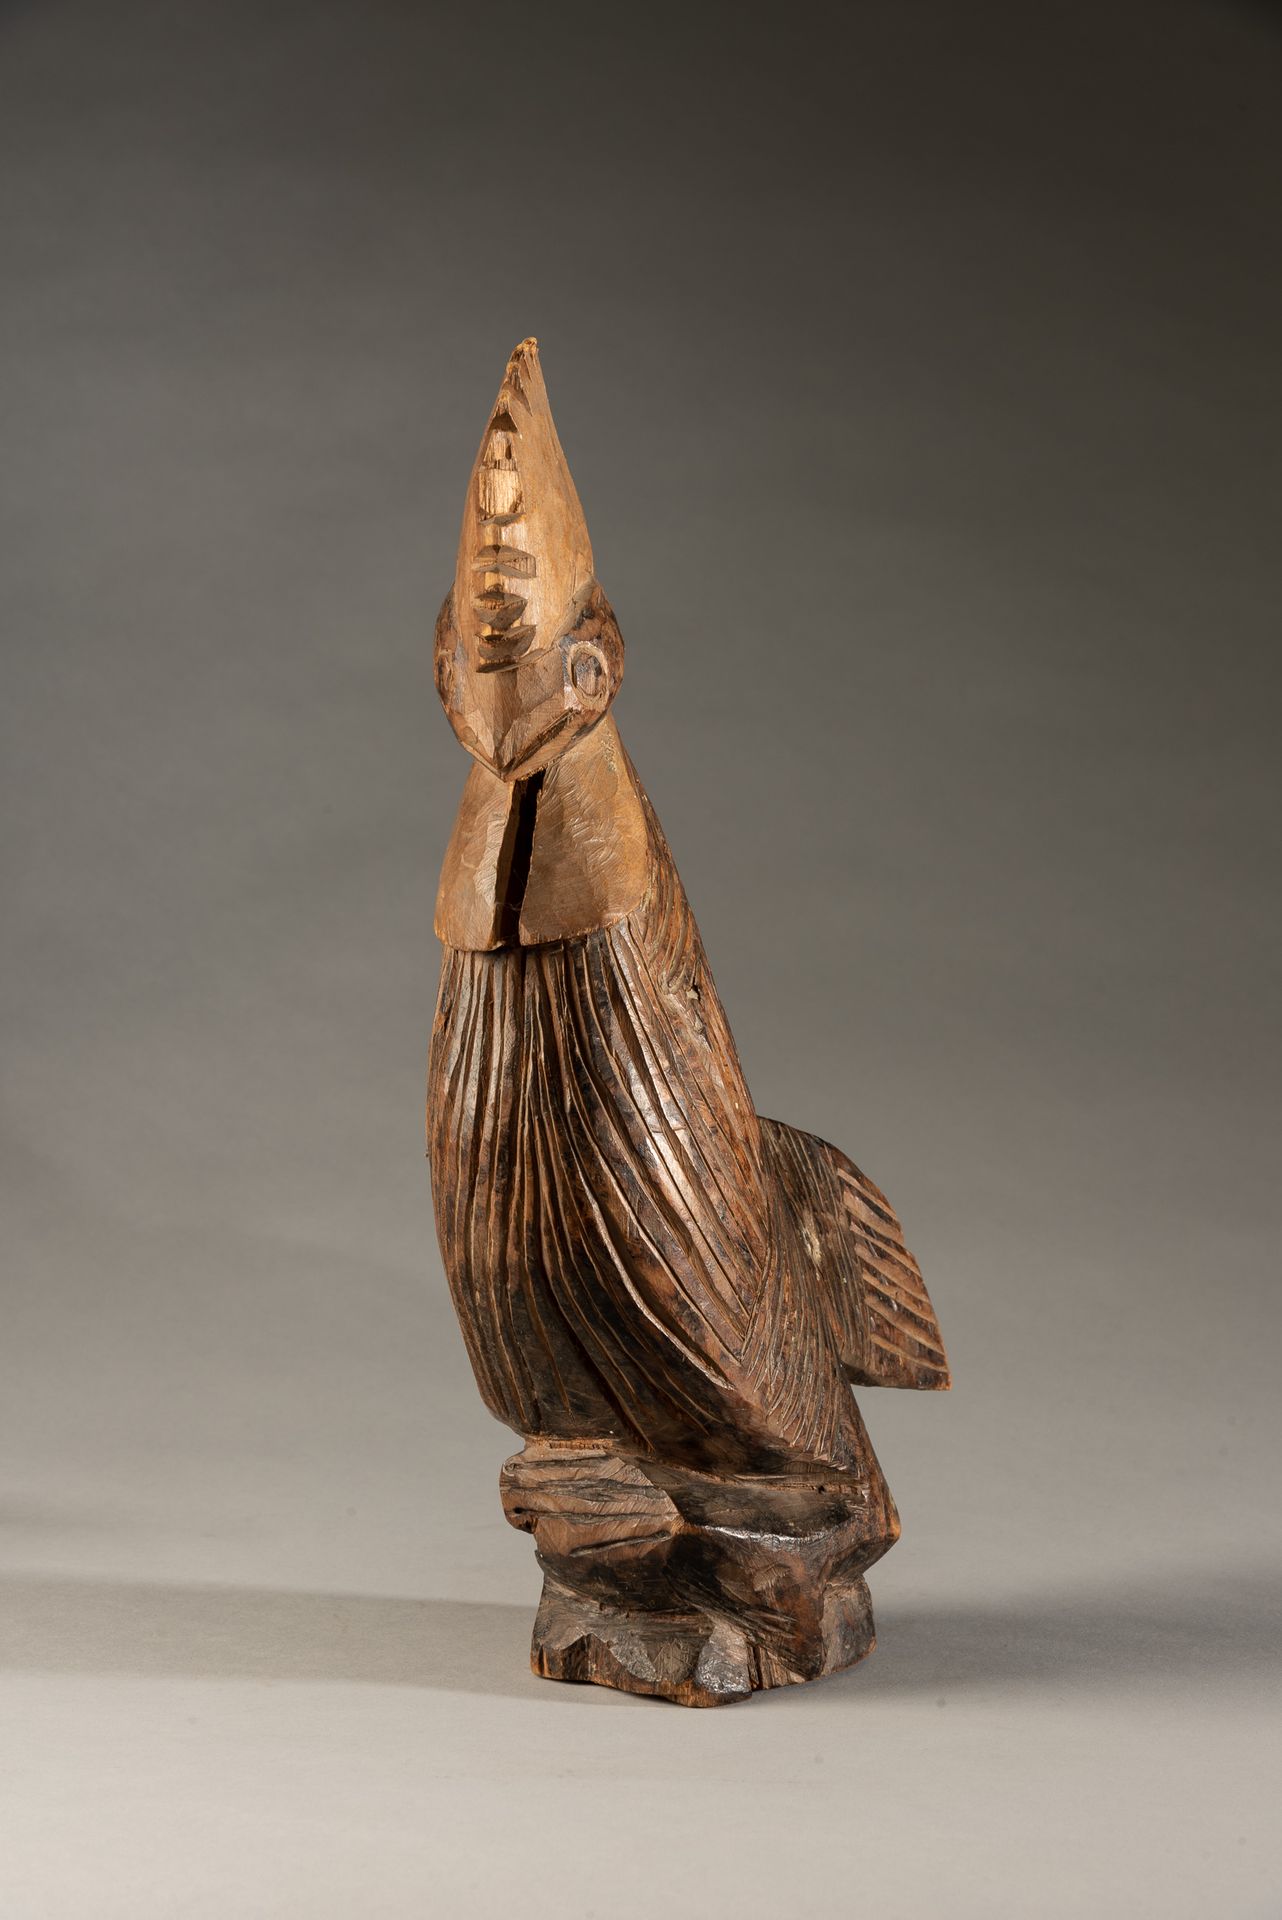 Null "Holzhahn, Nigeria" - Aus Holz geschnitzte Figur eines Stammeshahns. 





&hellip;